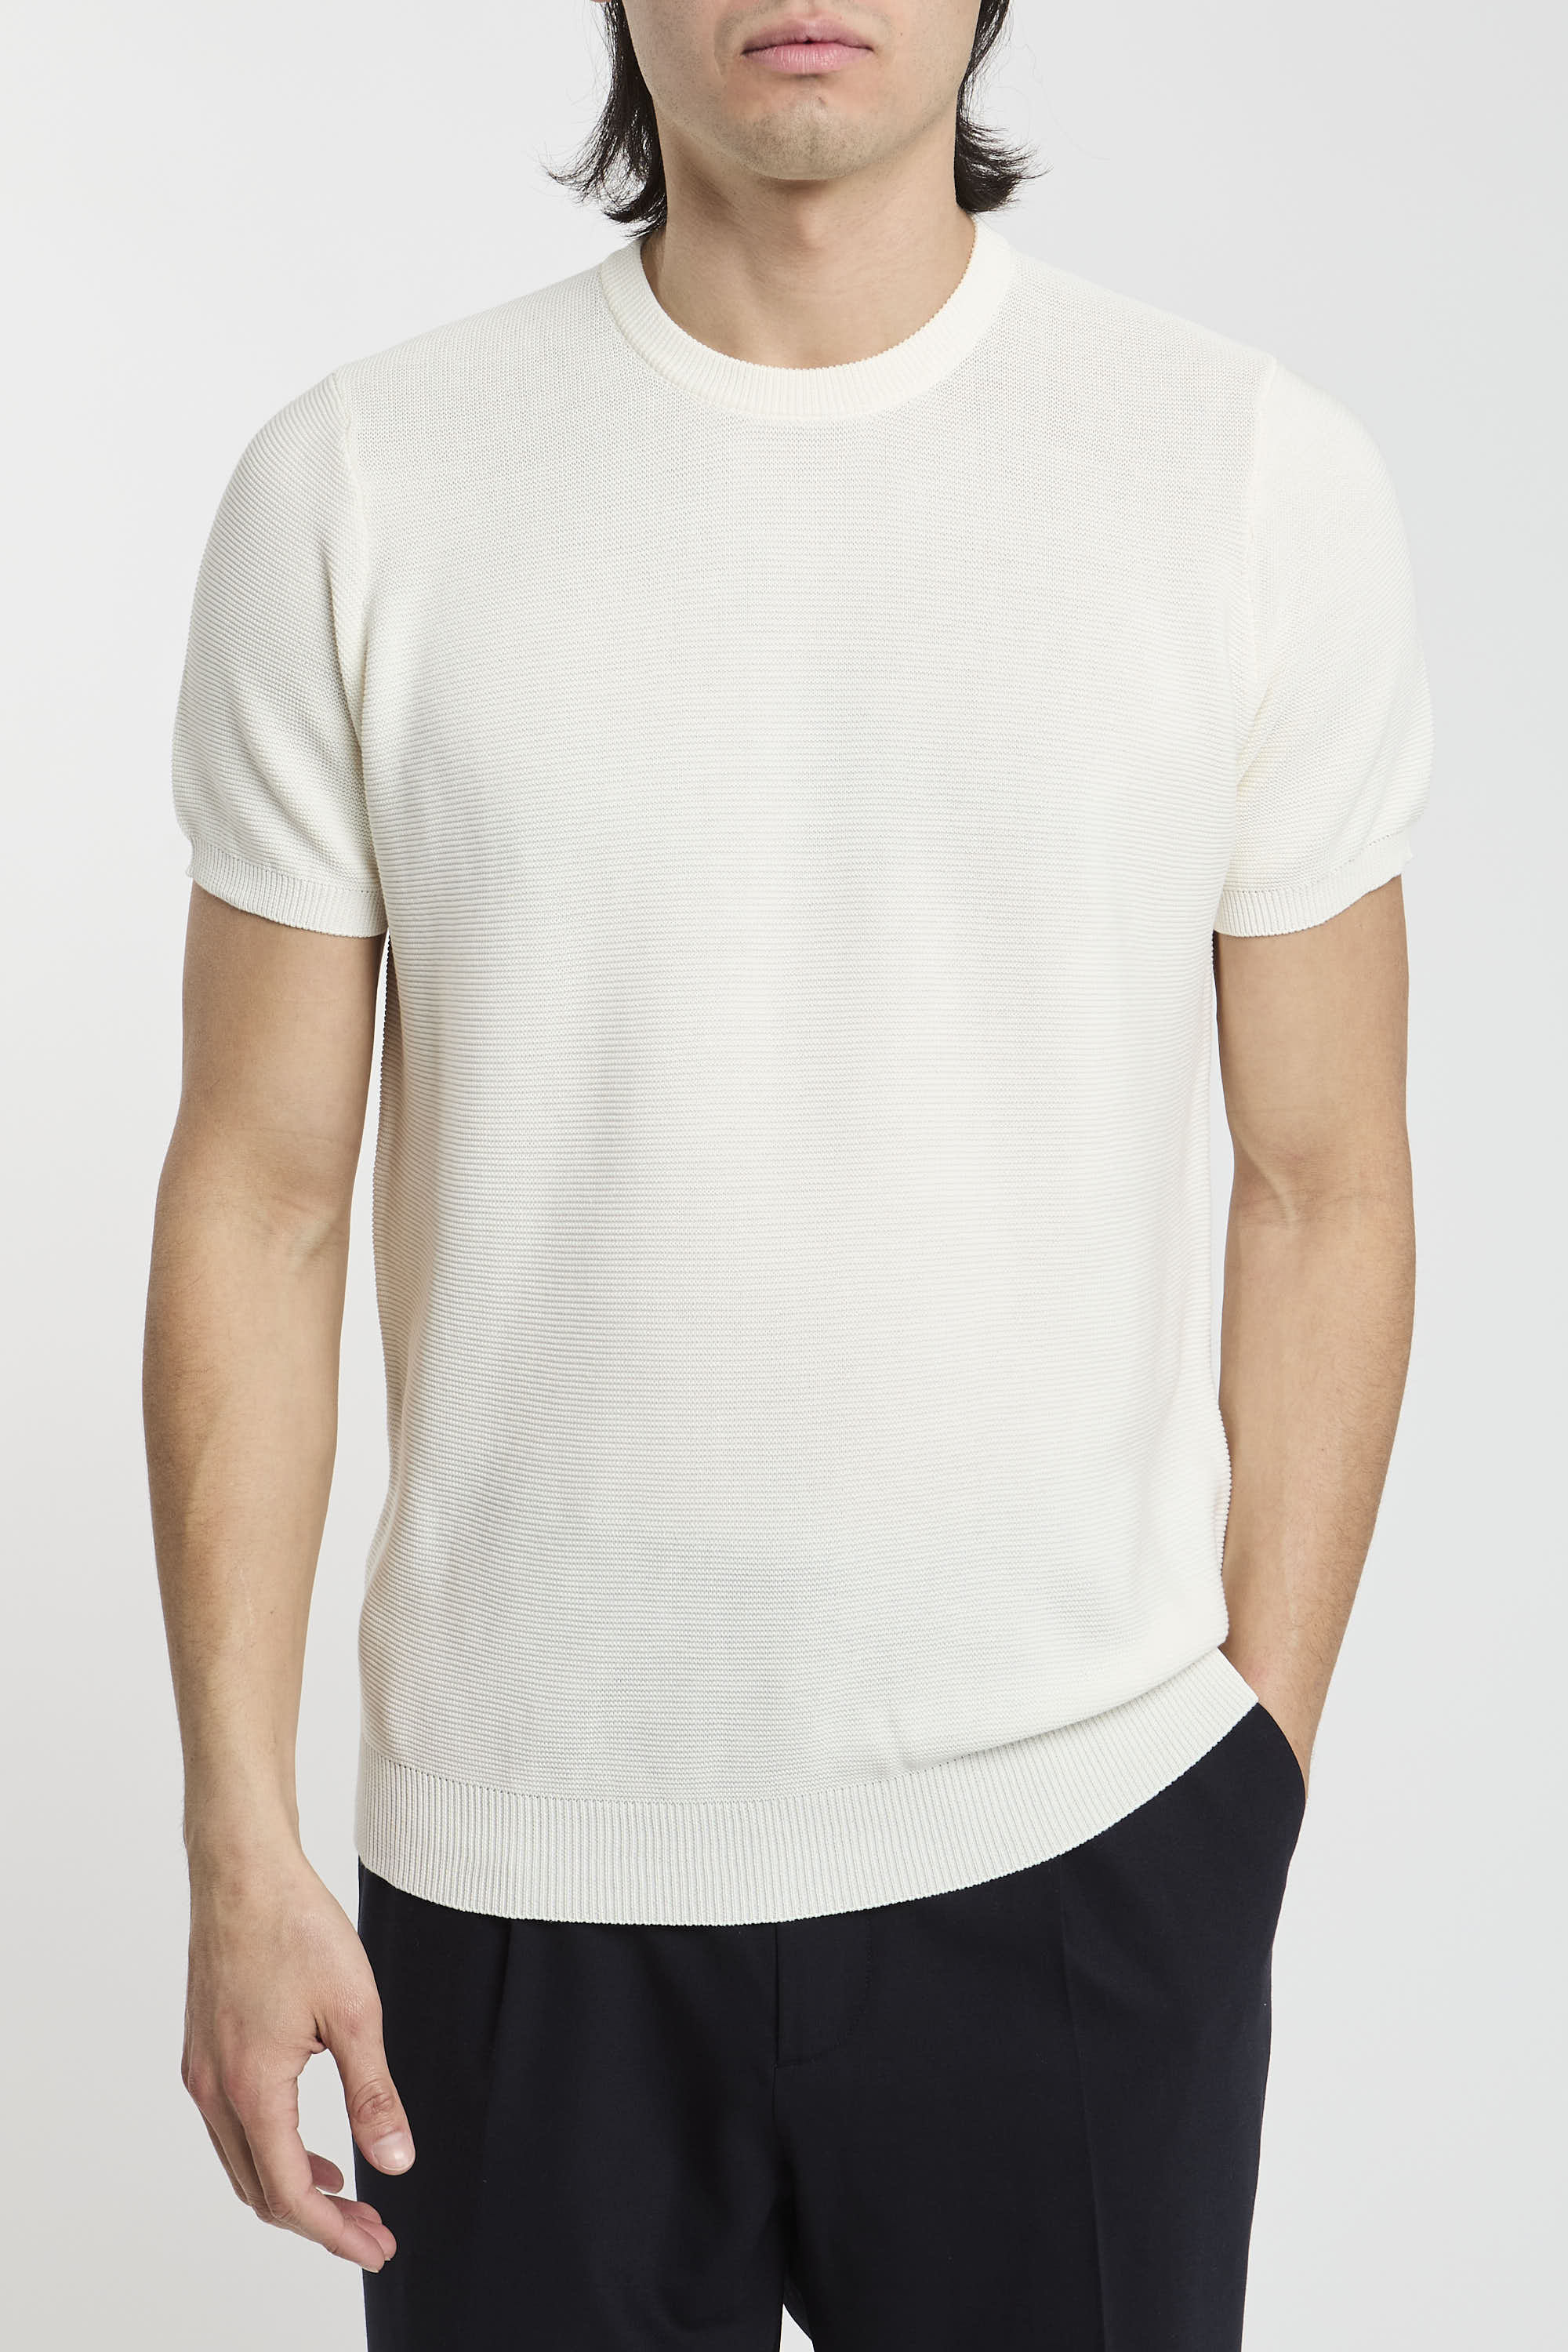 Drumohr Cotton T-shirt White-6